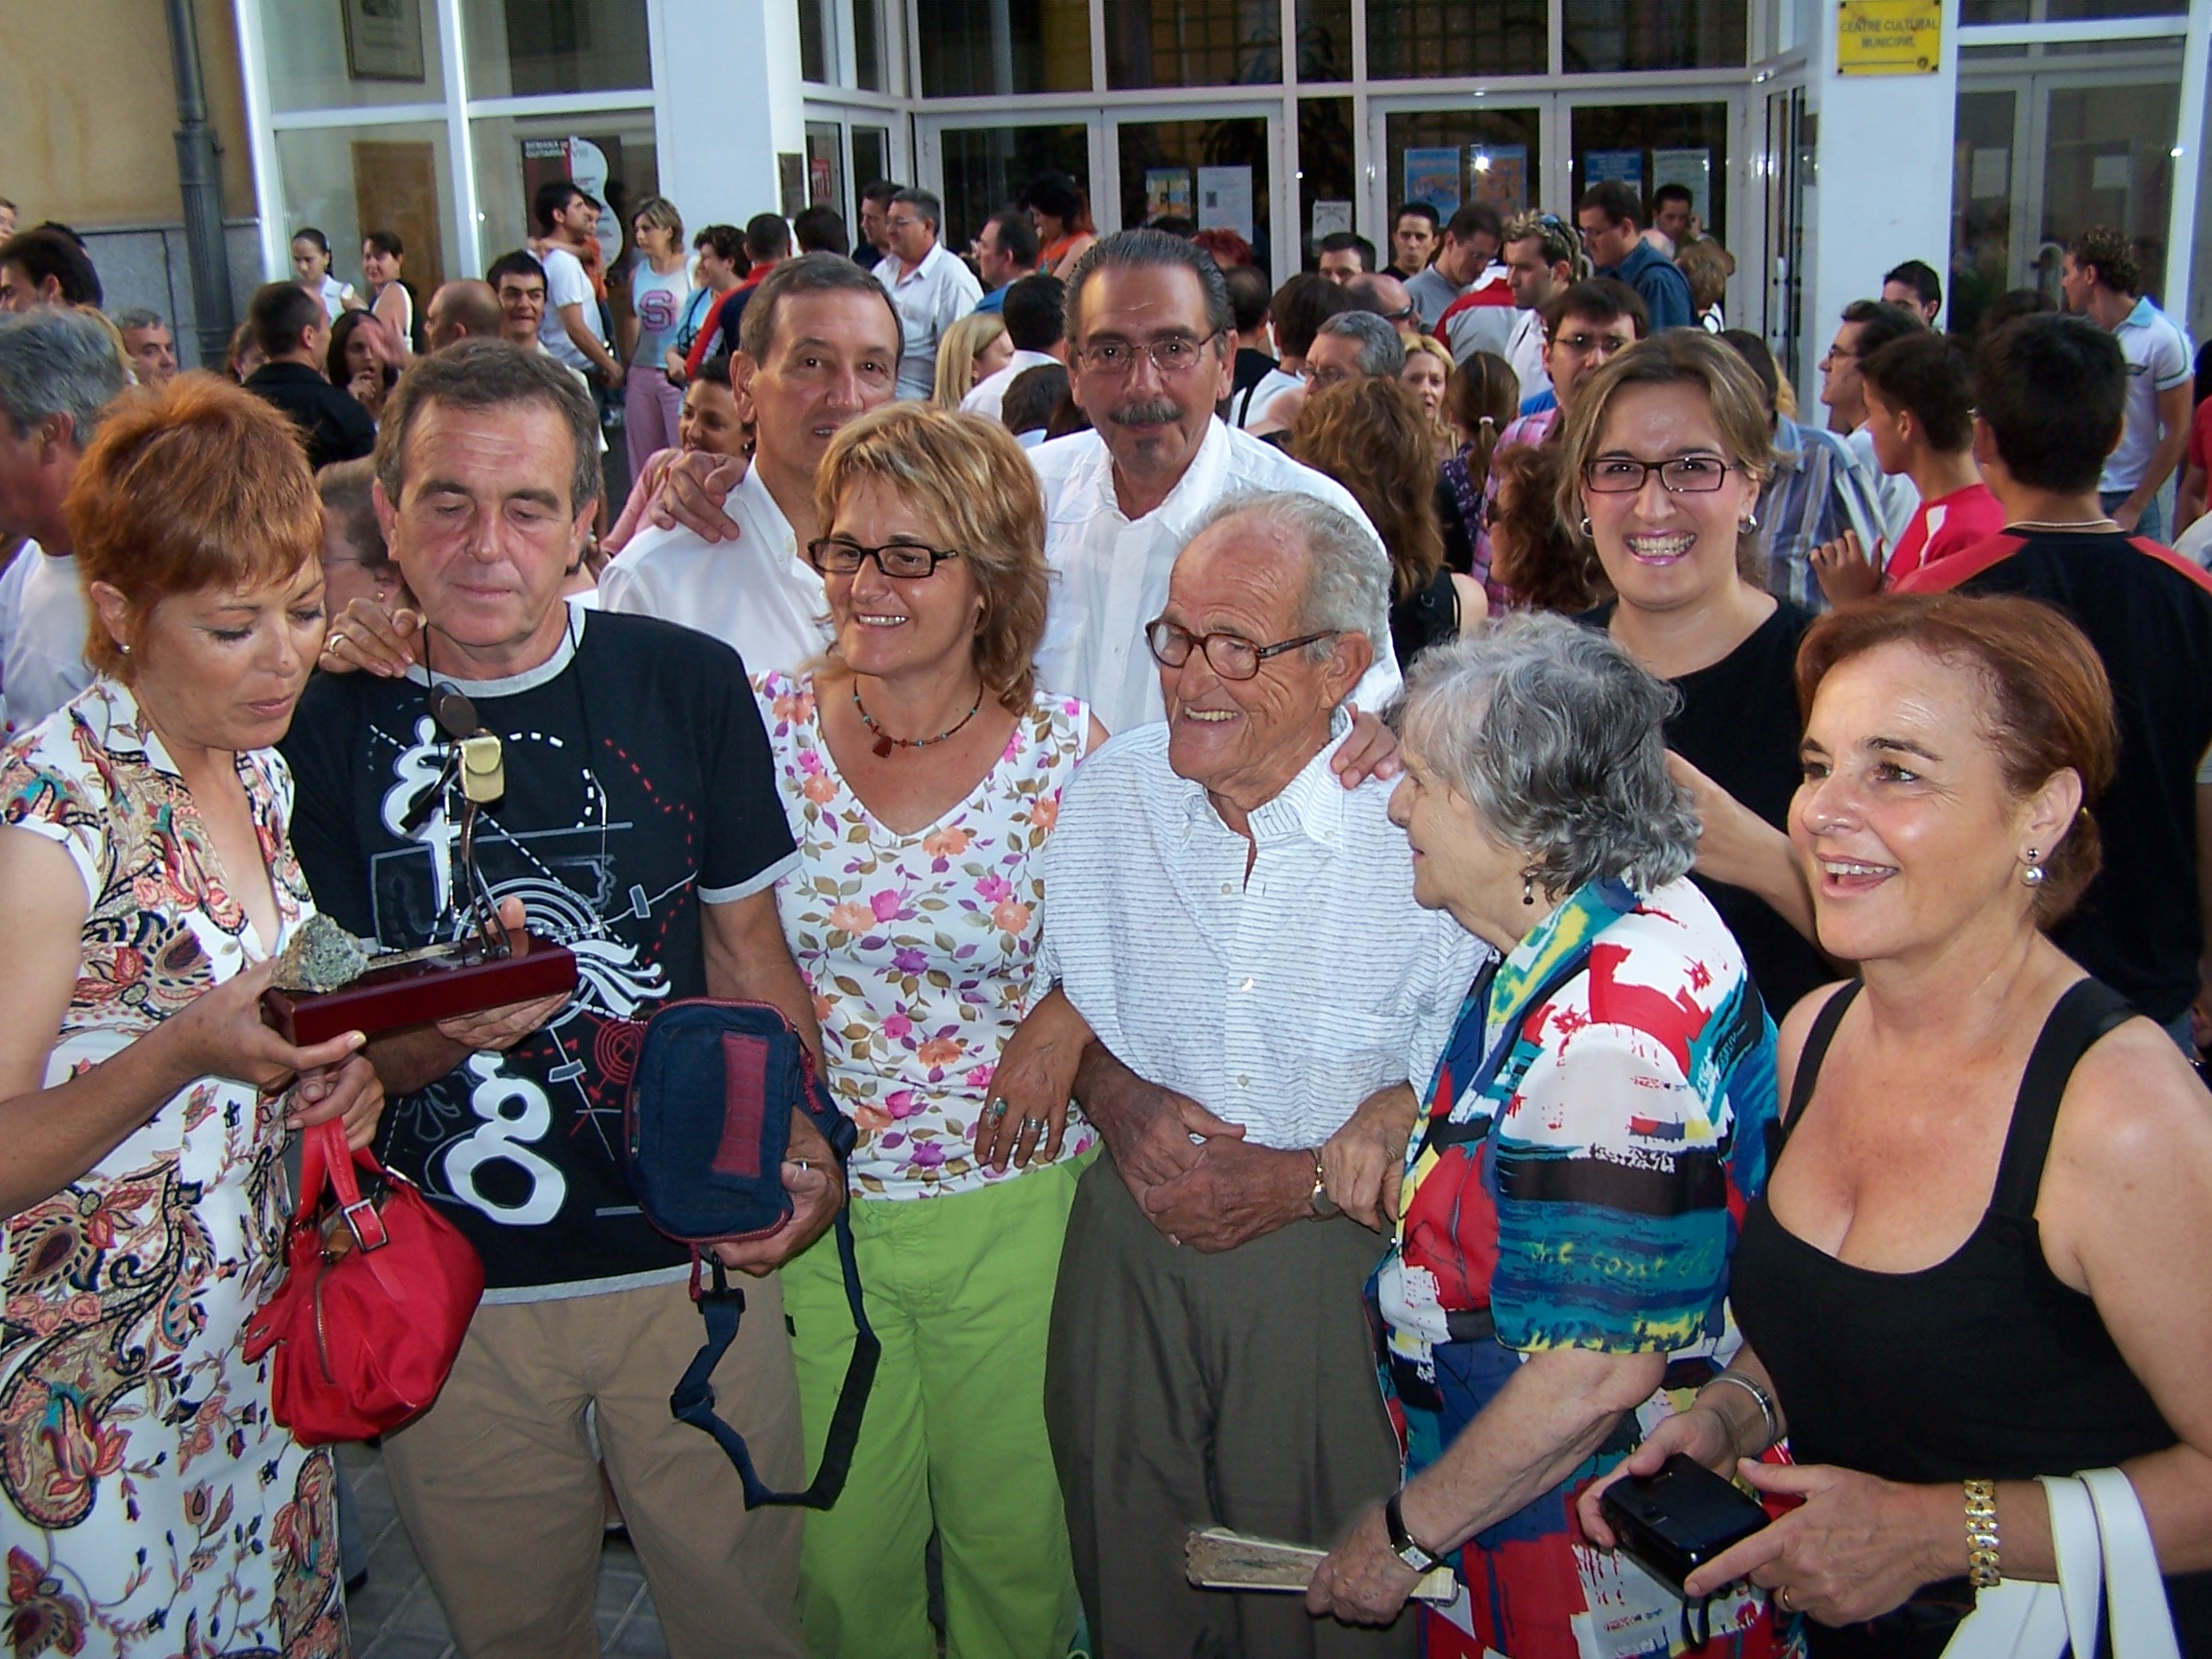 Helios rodeado de su familia cuando recibió el trofeo "Leyenda del deporte" de El Carrer.